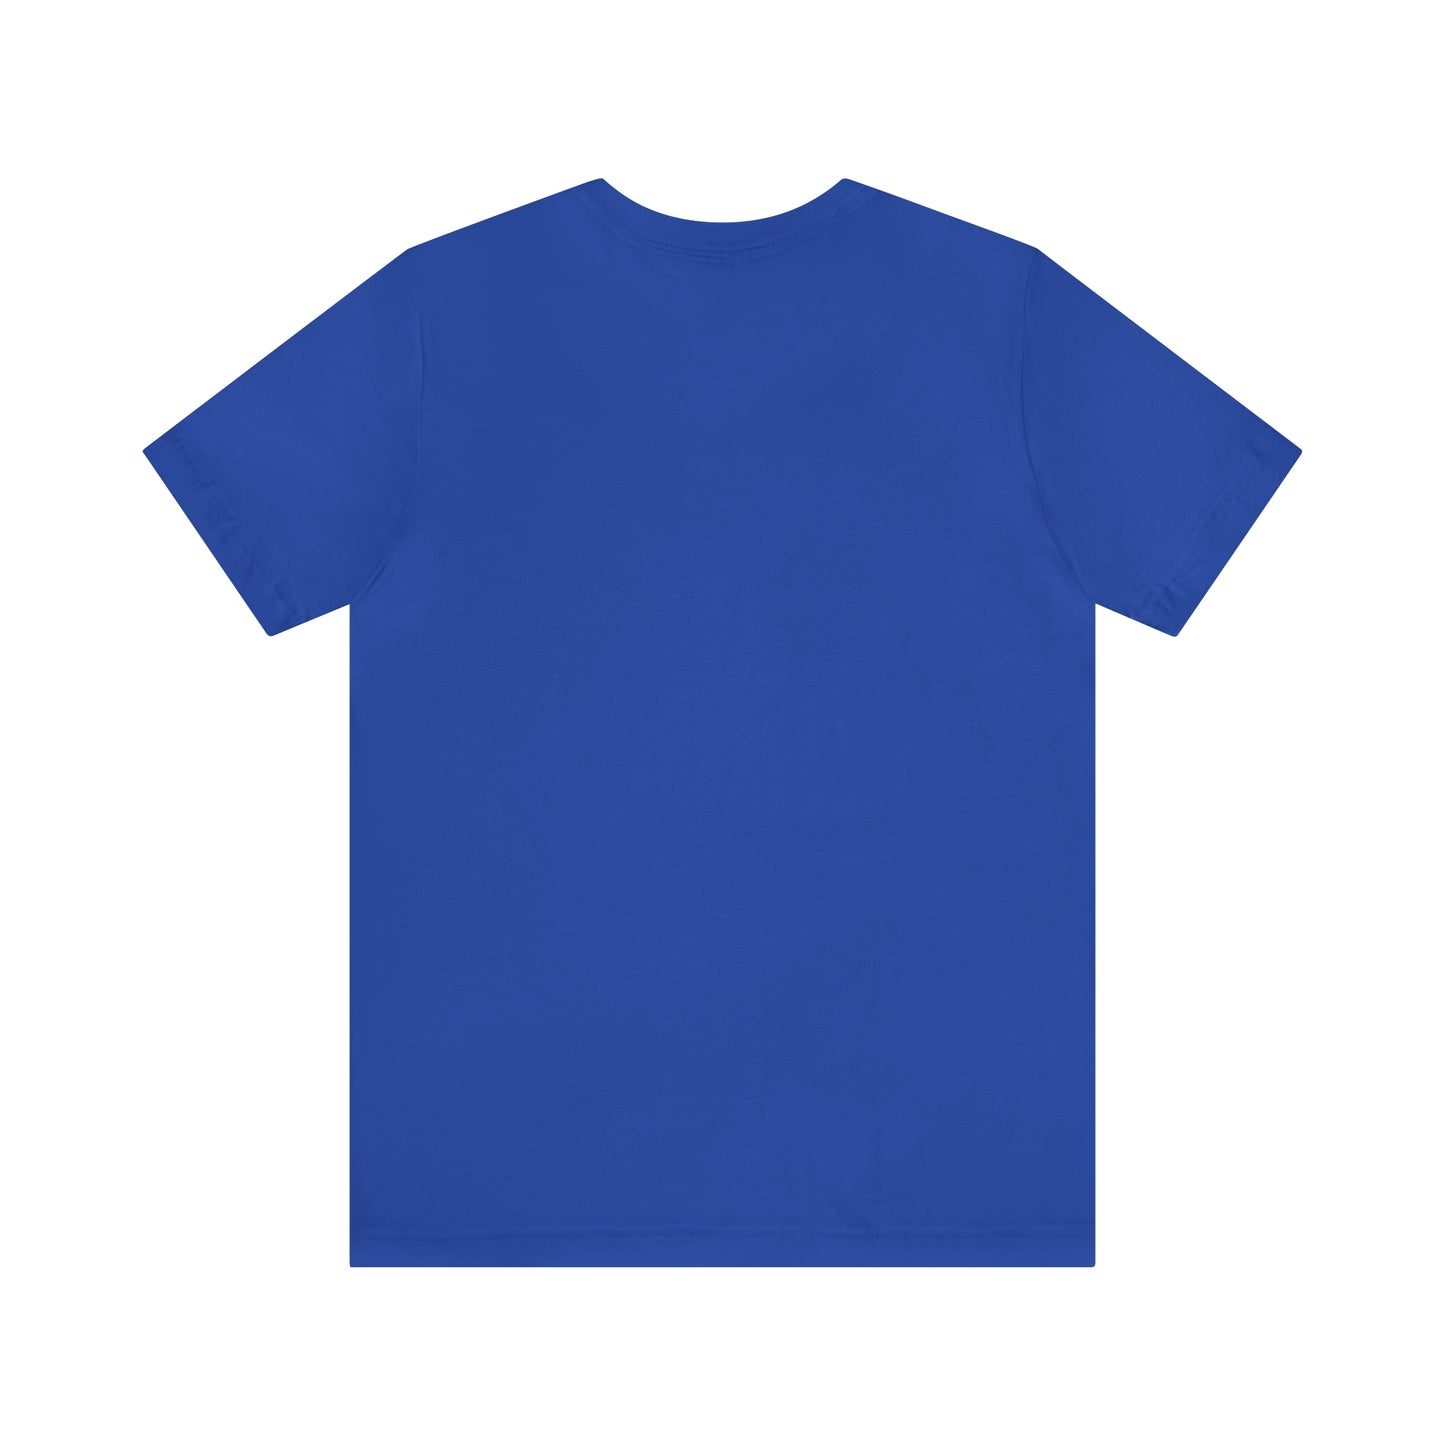 Errand Tee | Running Errands T-Shirt T-Shirt Petrova Designs